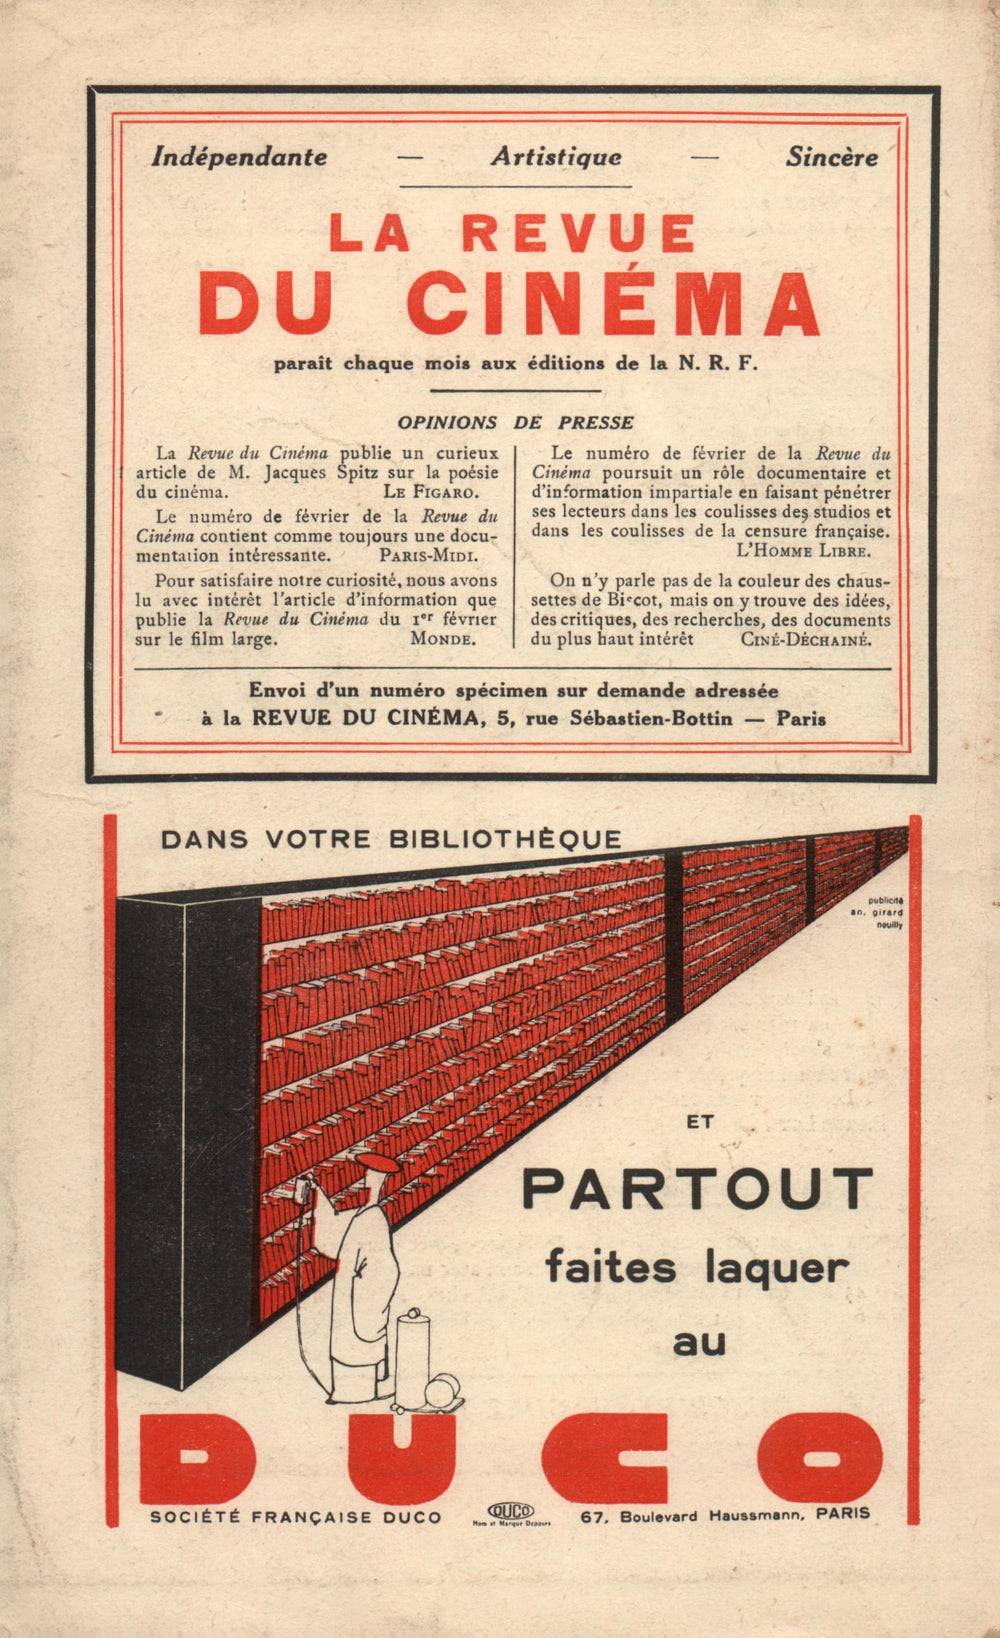 La Nouvelle Revue Française N' 211 (Avril 1931)